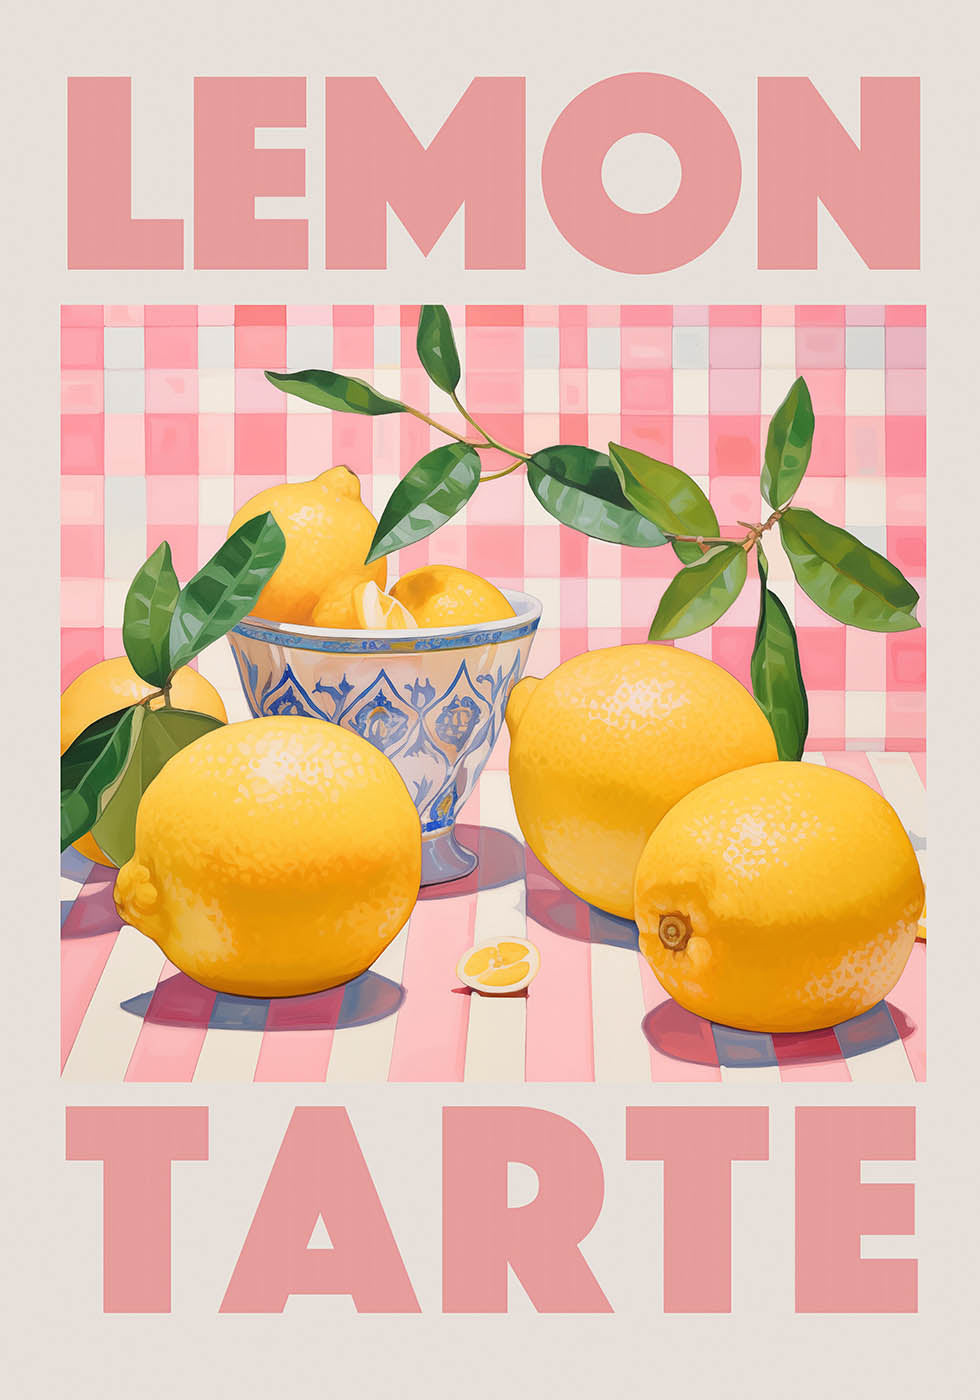 Lemon tarte poster. kitchen decor poster